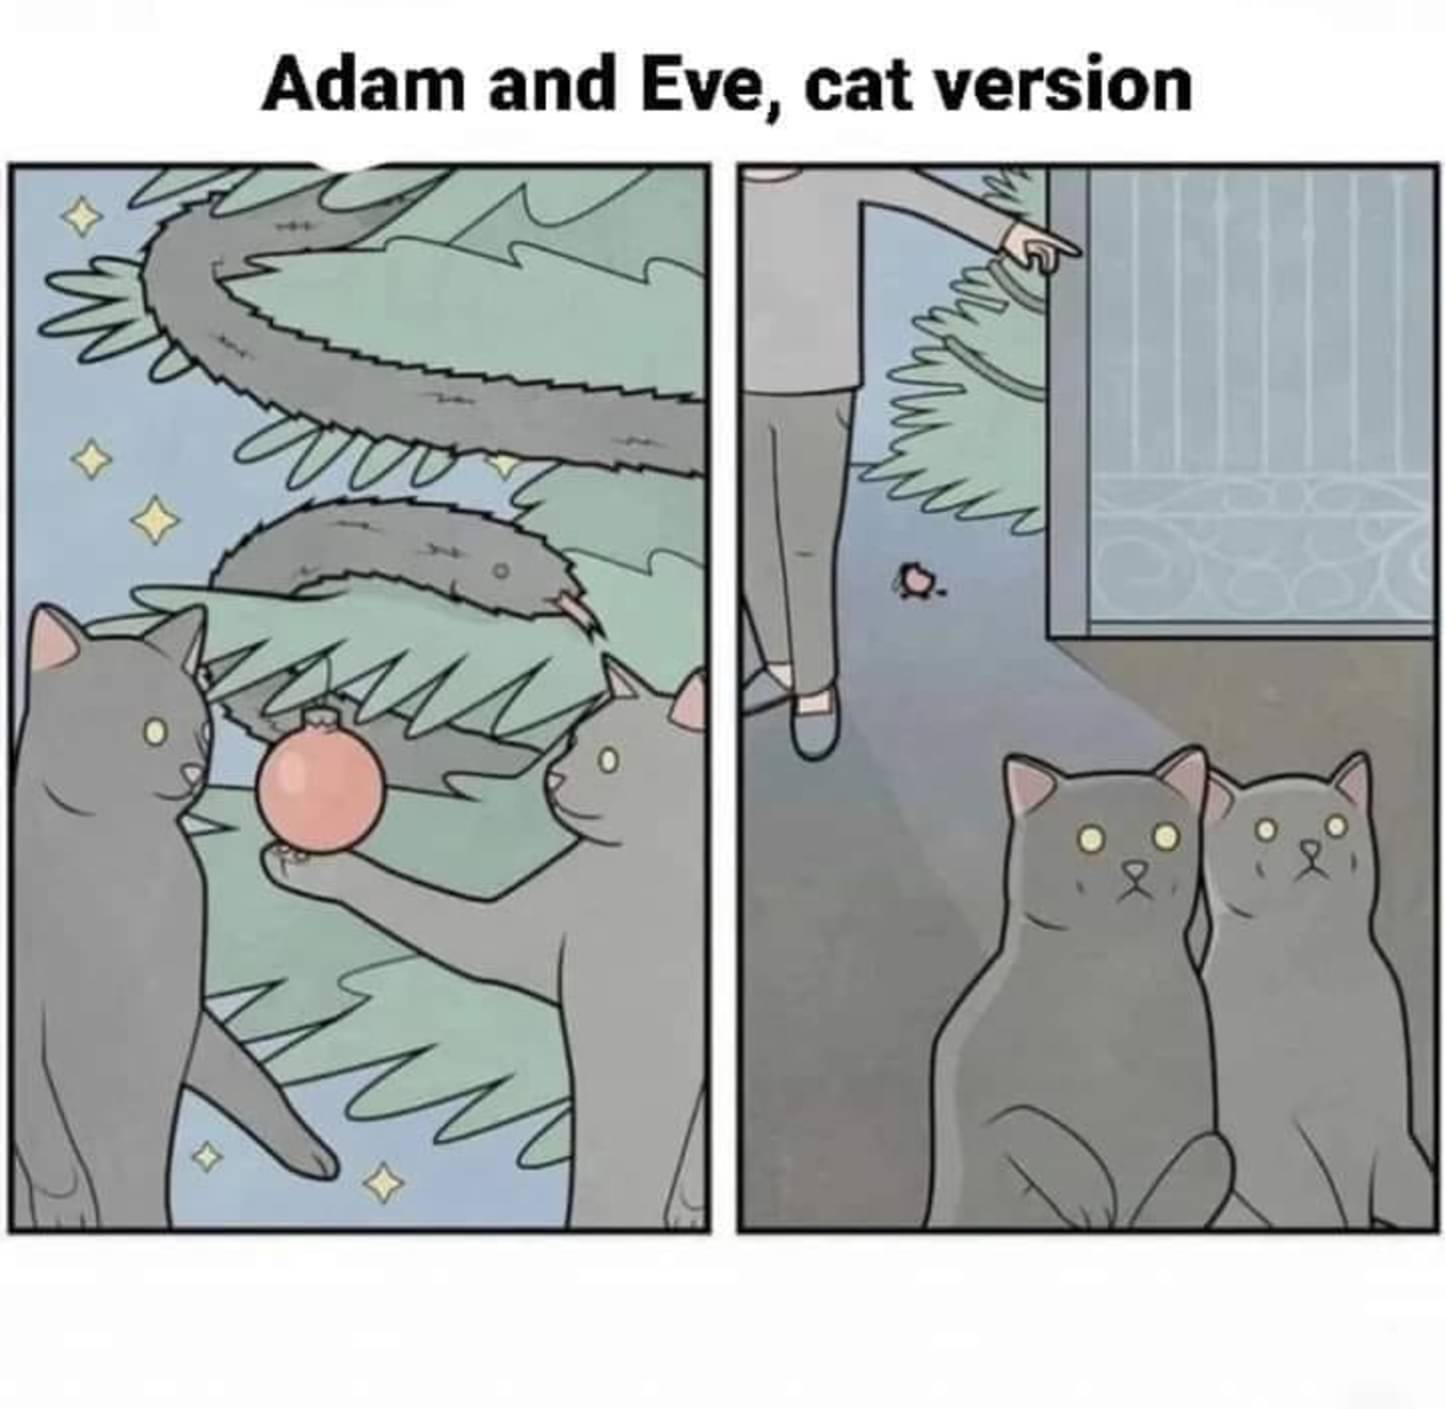 adam_and_eve_cat_version.jpg